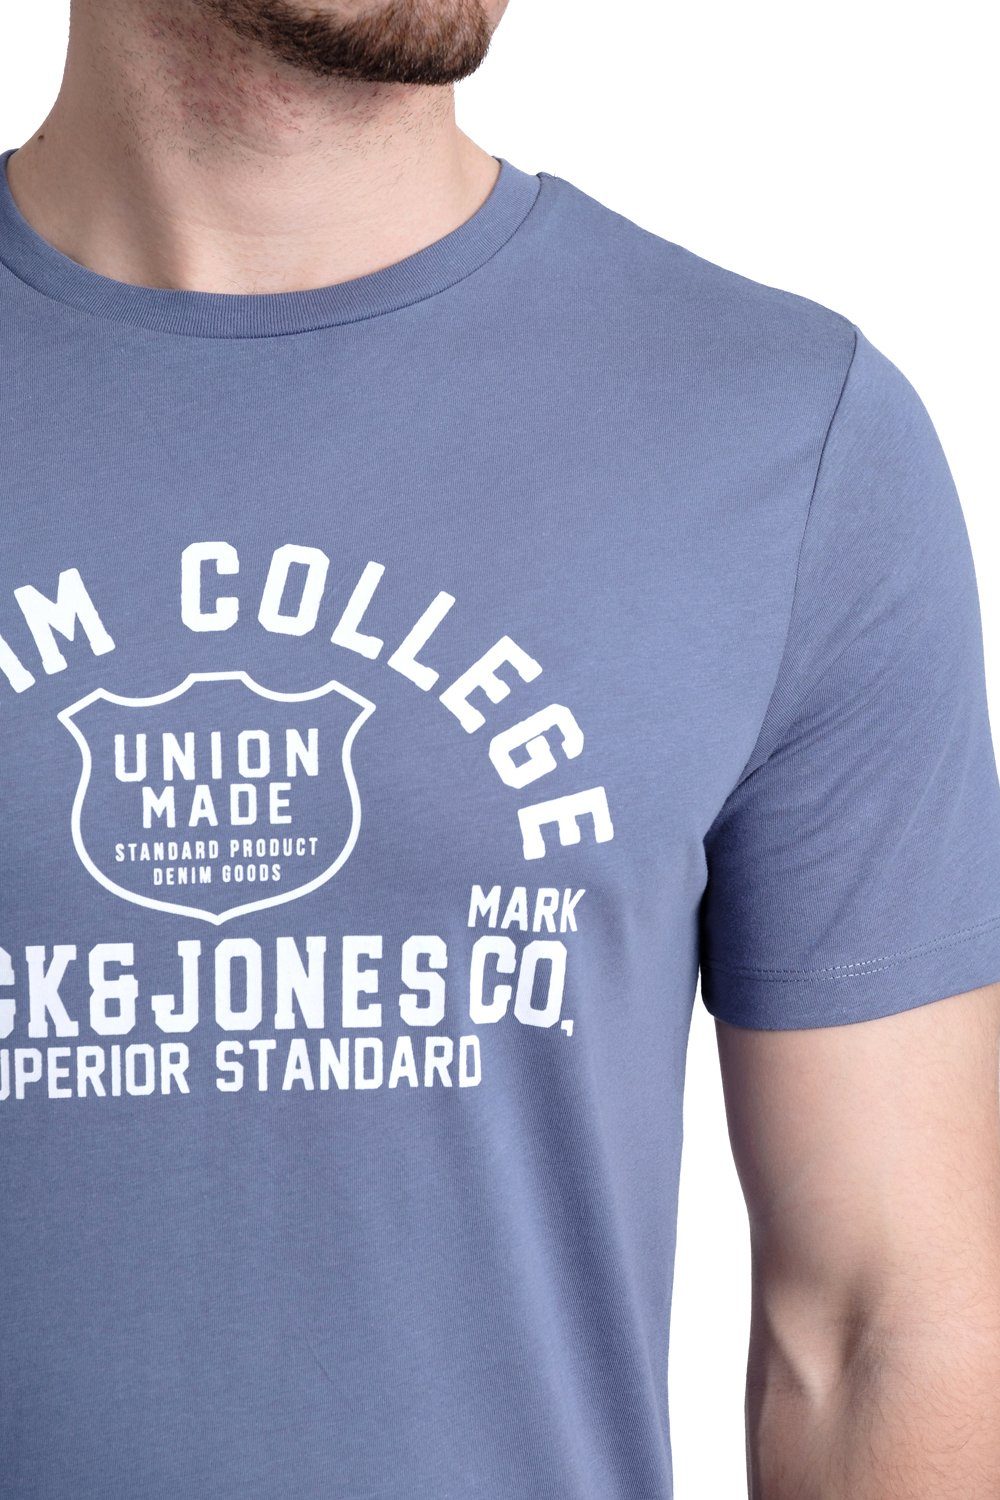 & Jack Print-Shirt T-Shirt Jones OPT mit 8 Baumwolle aus Aufdruck